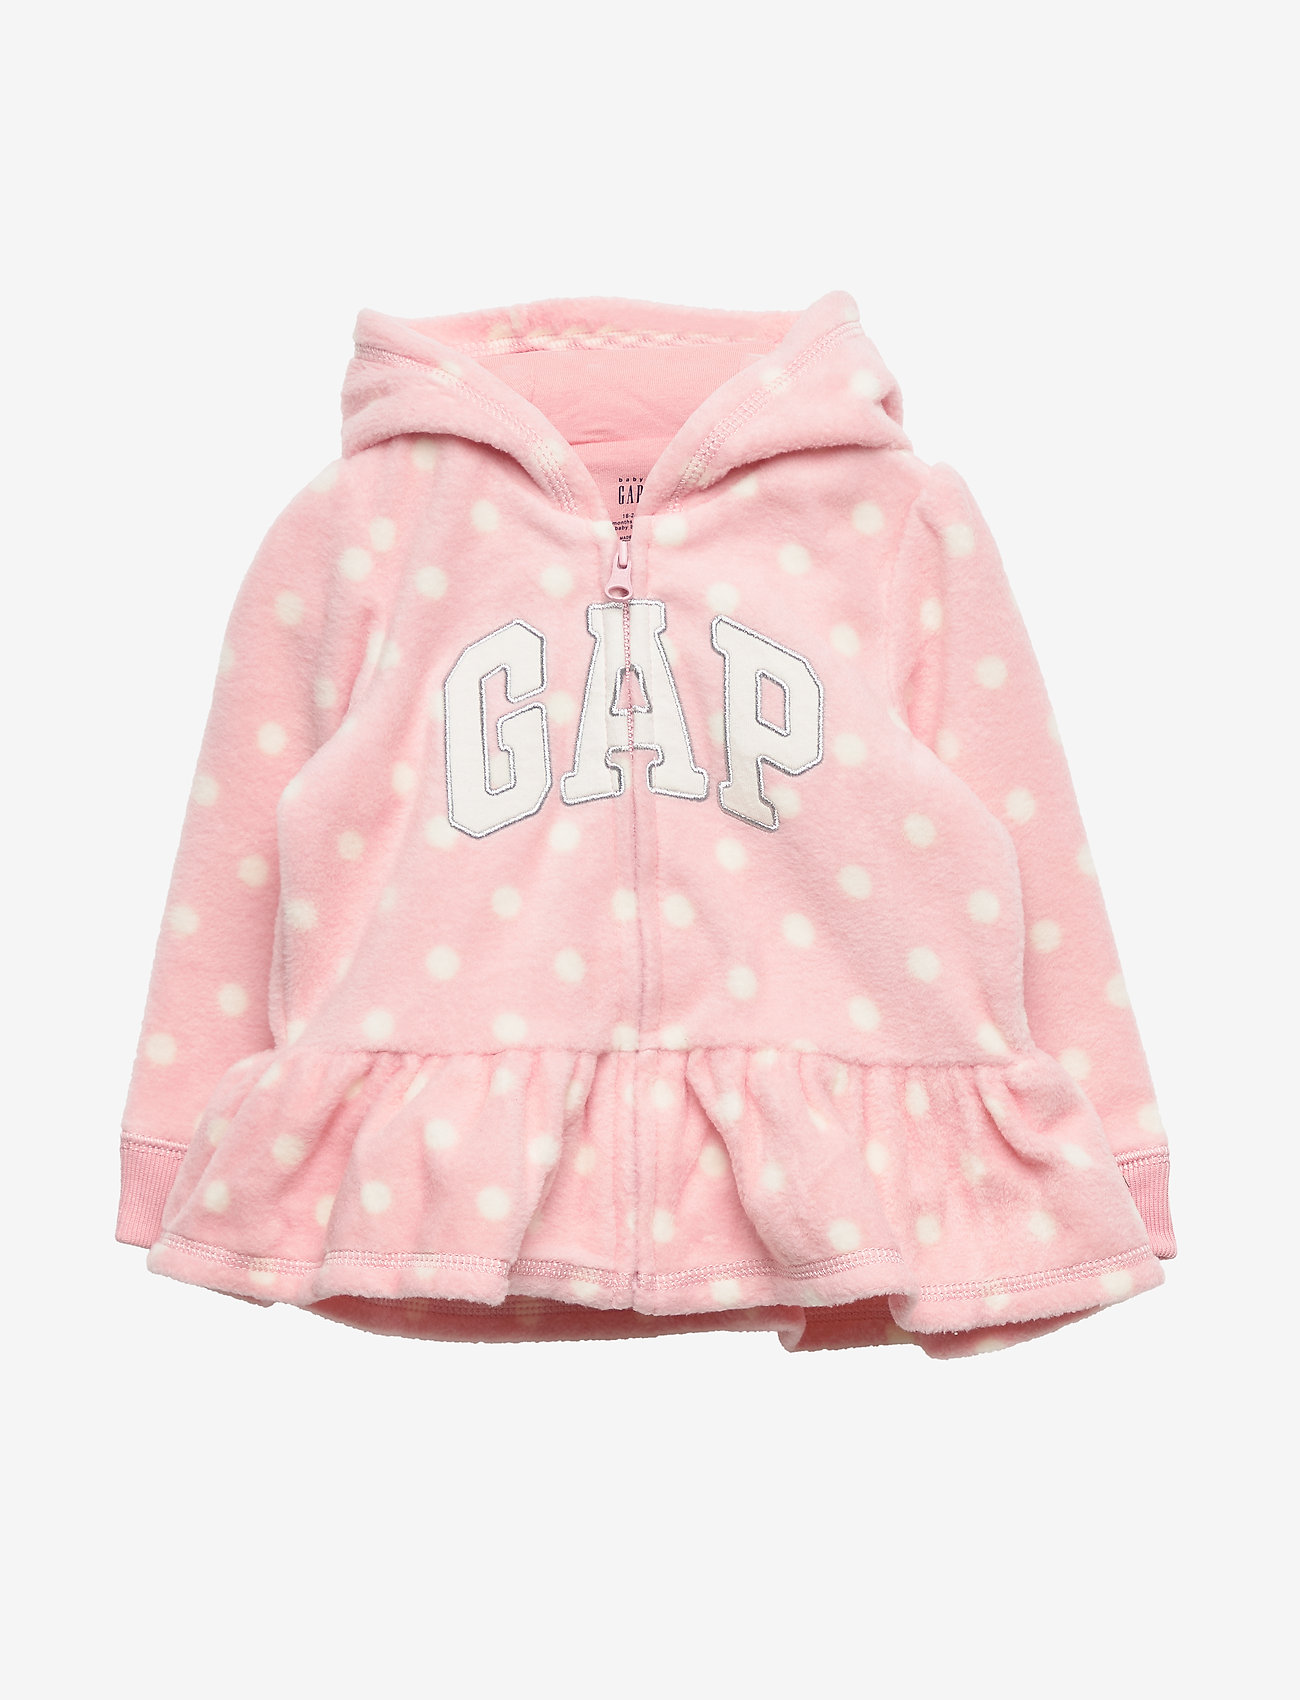 baby gap outerwear